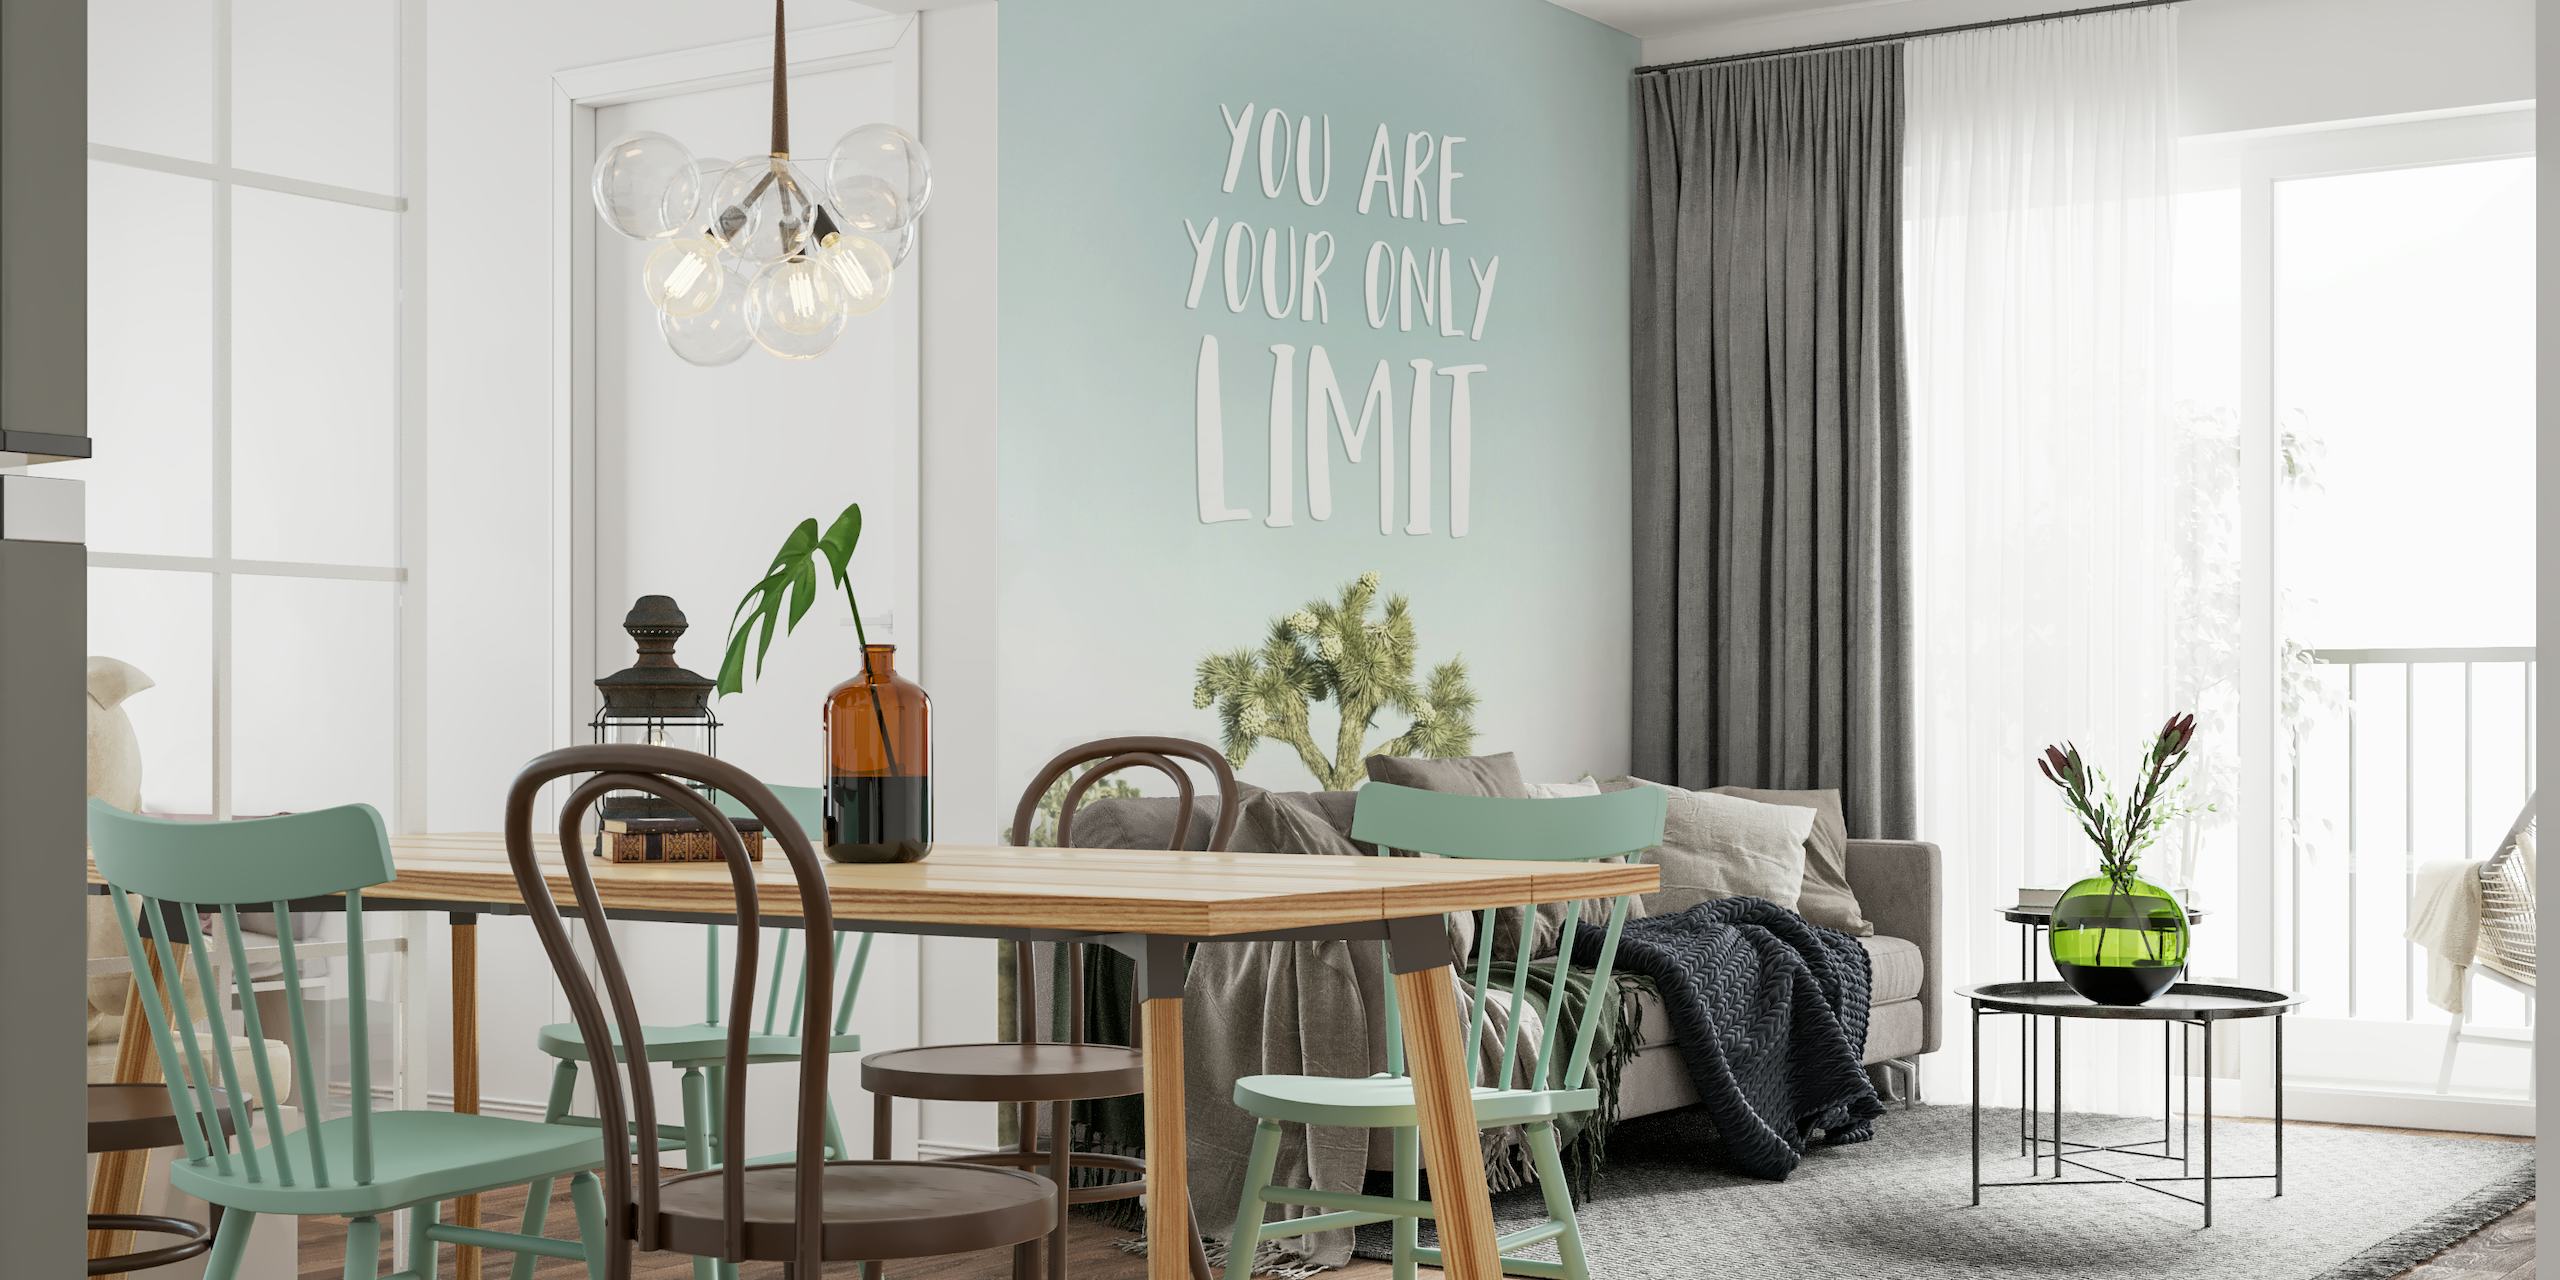 Mural de pared inspirador con un paisaje de árboles y el texto "Tú eres tu único límite"